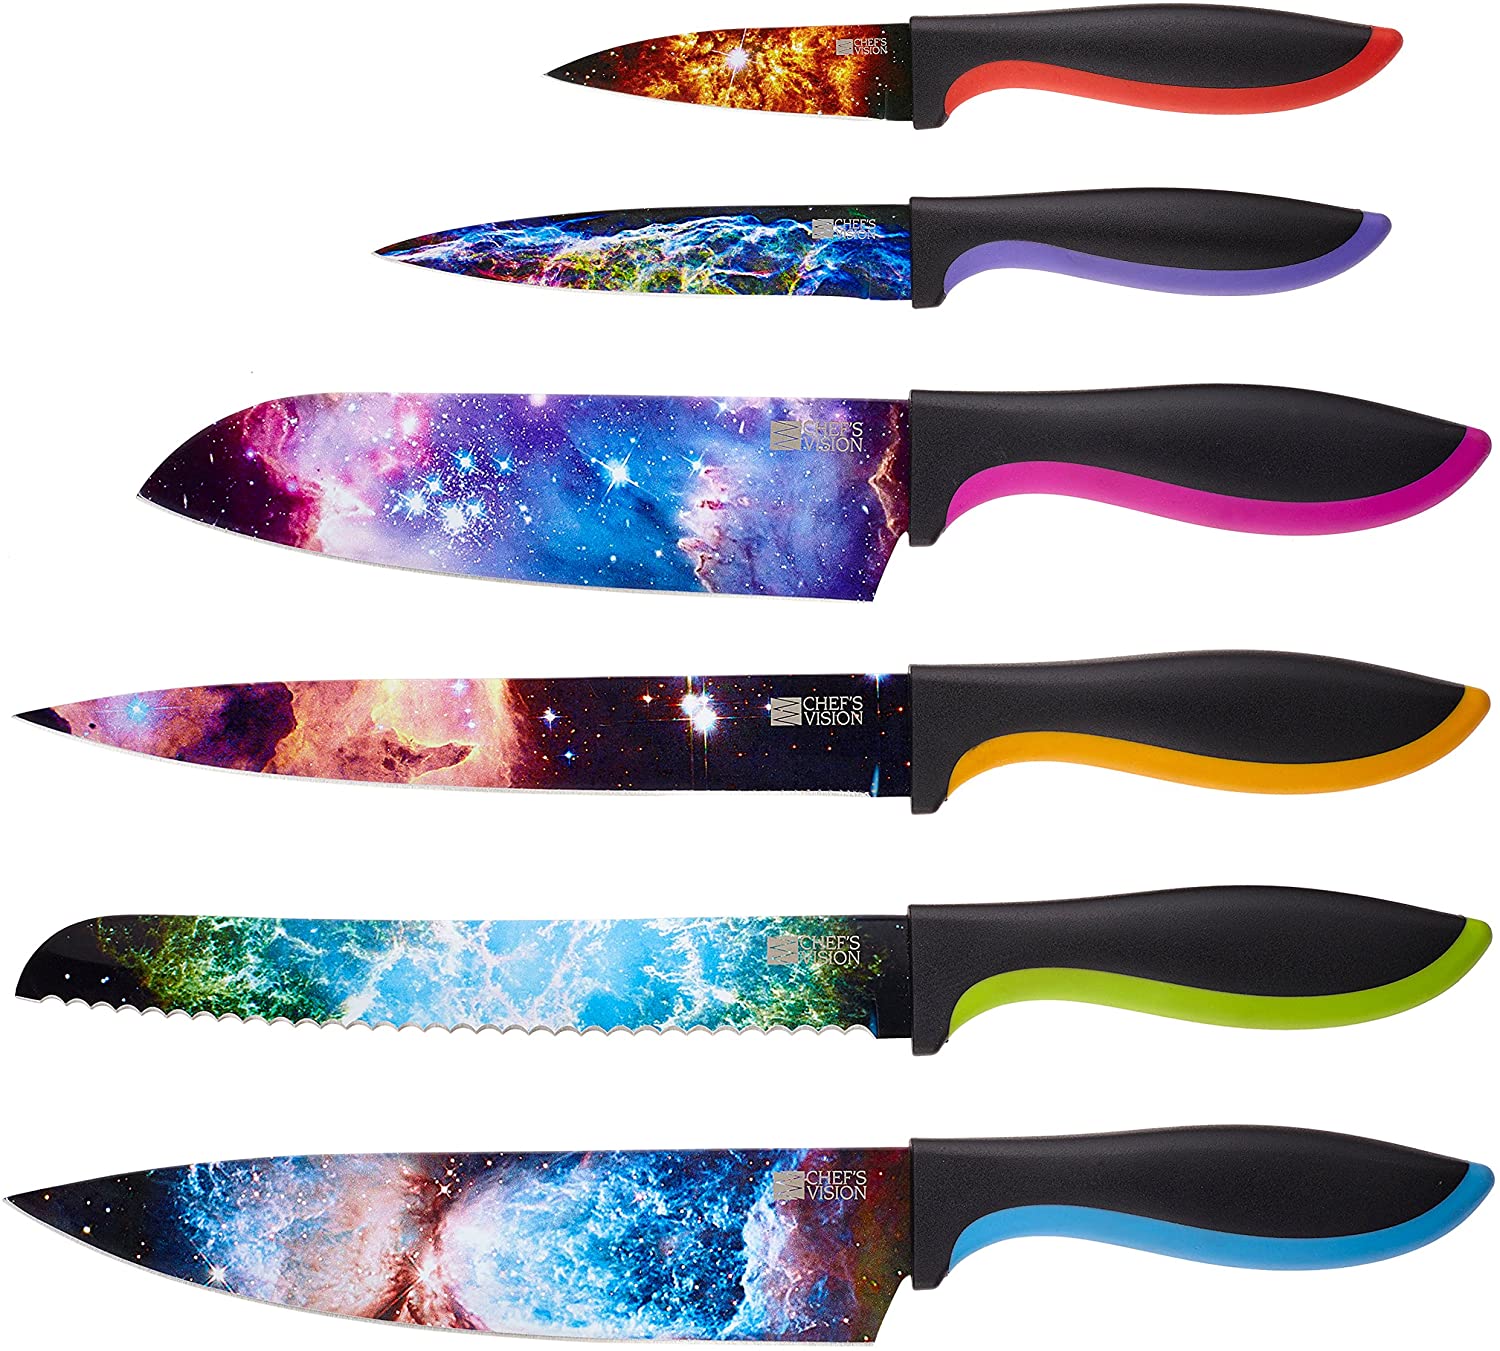 chefs vision kitchen knife set